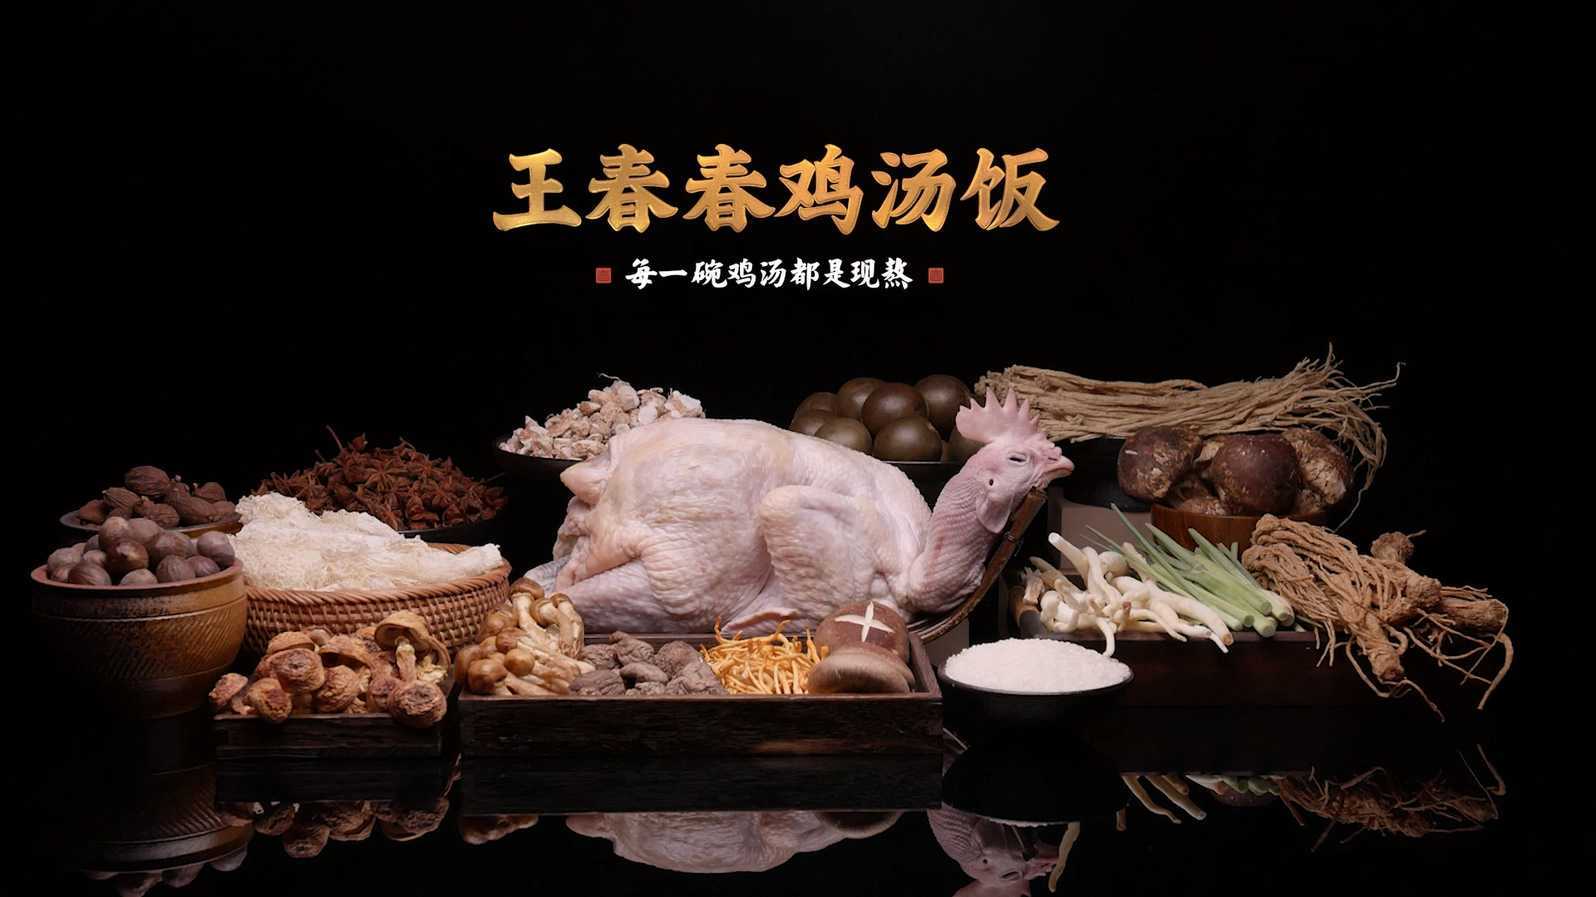 王春春鸡汤饭广告